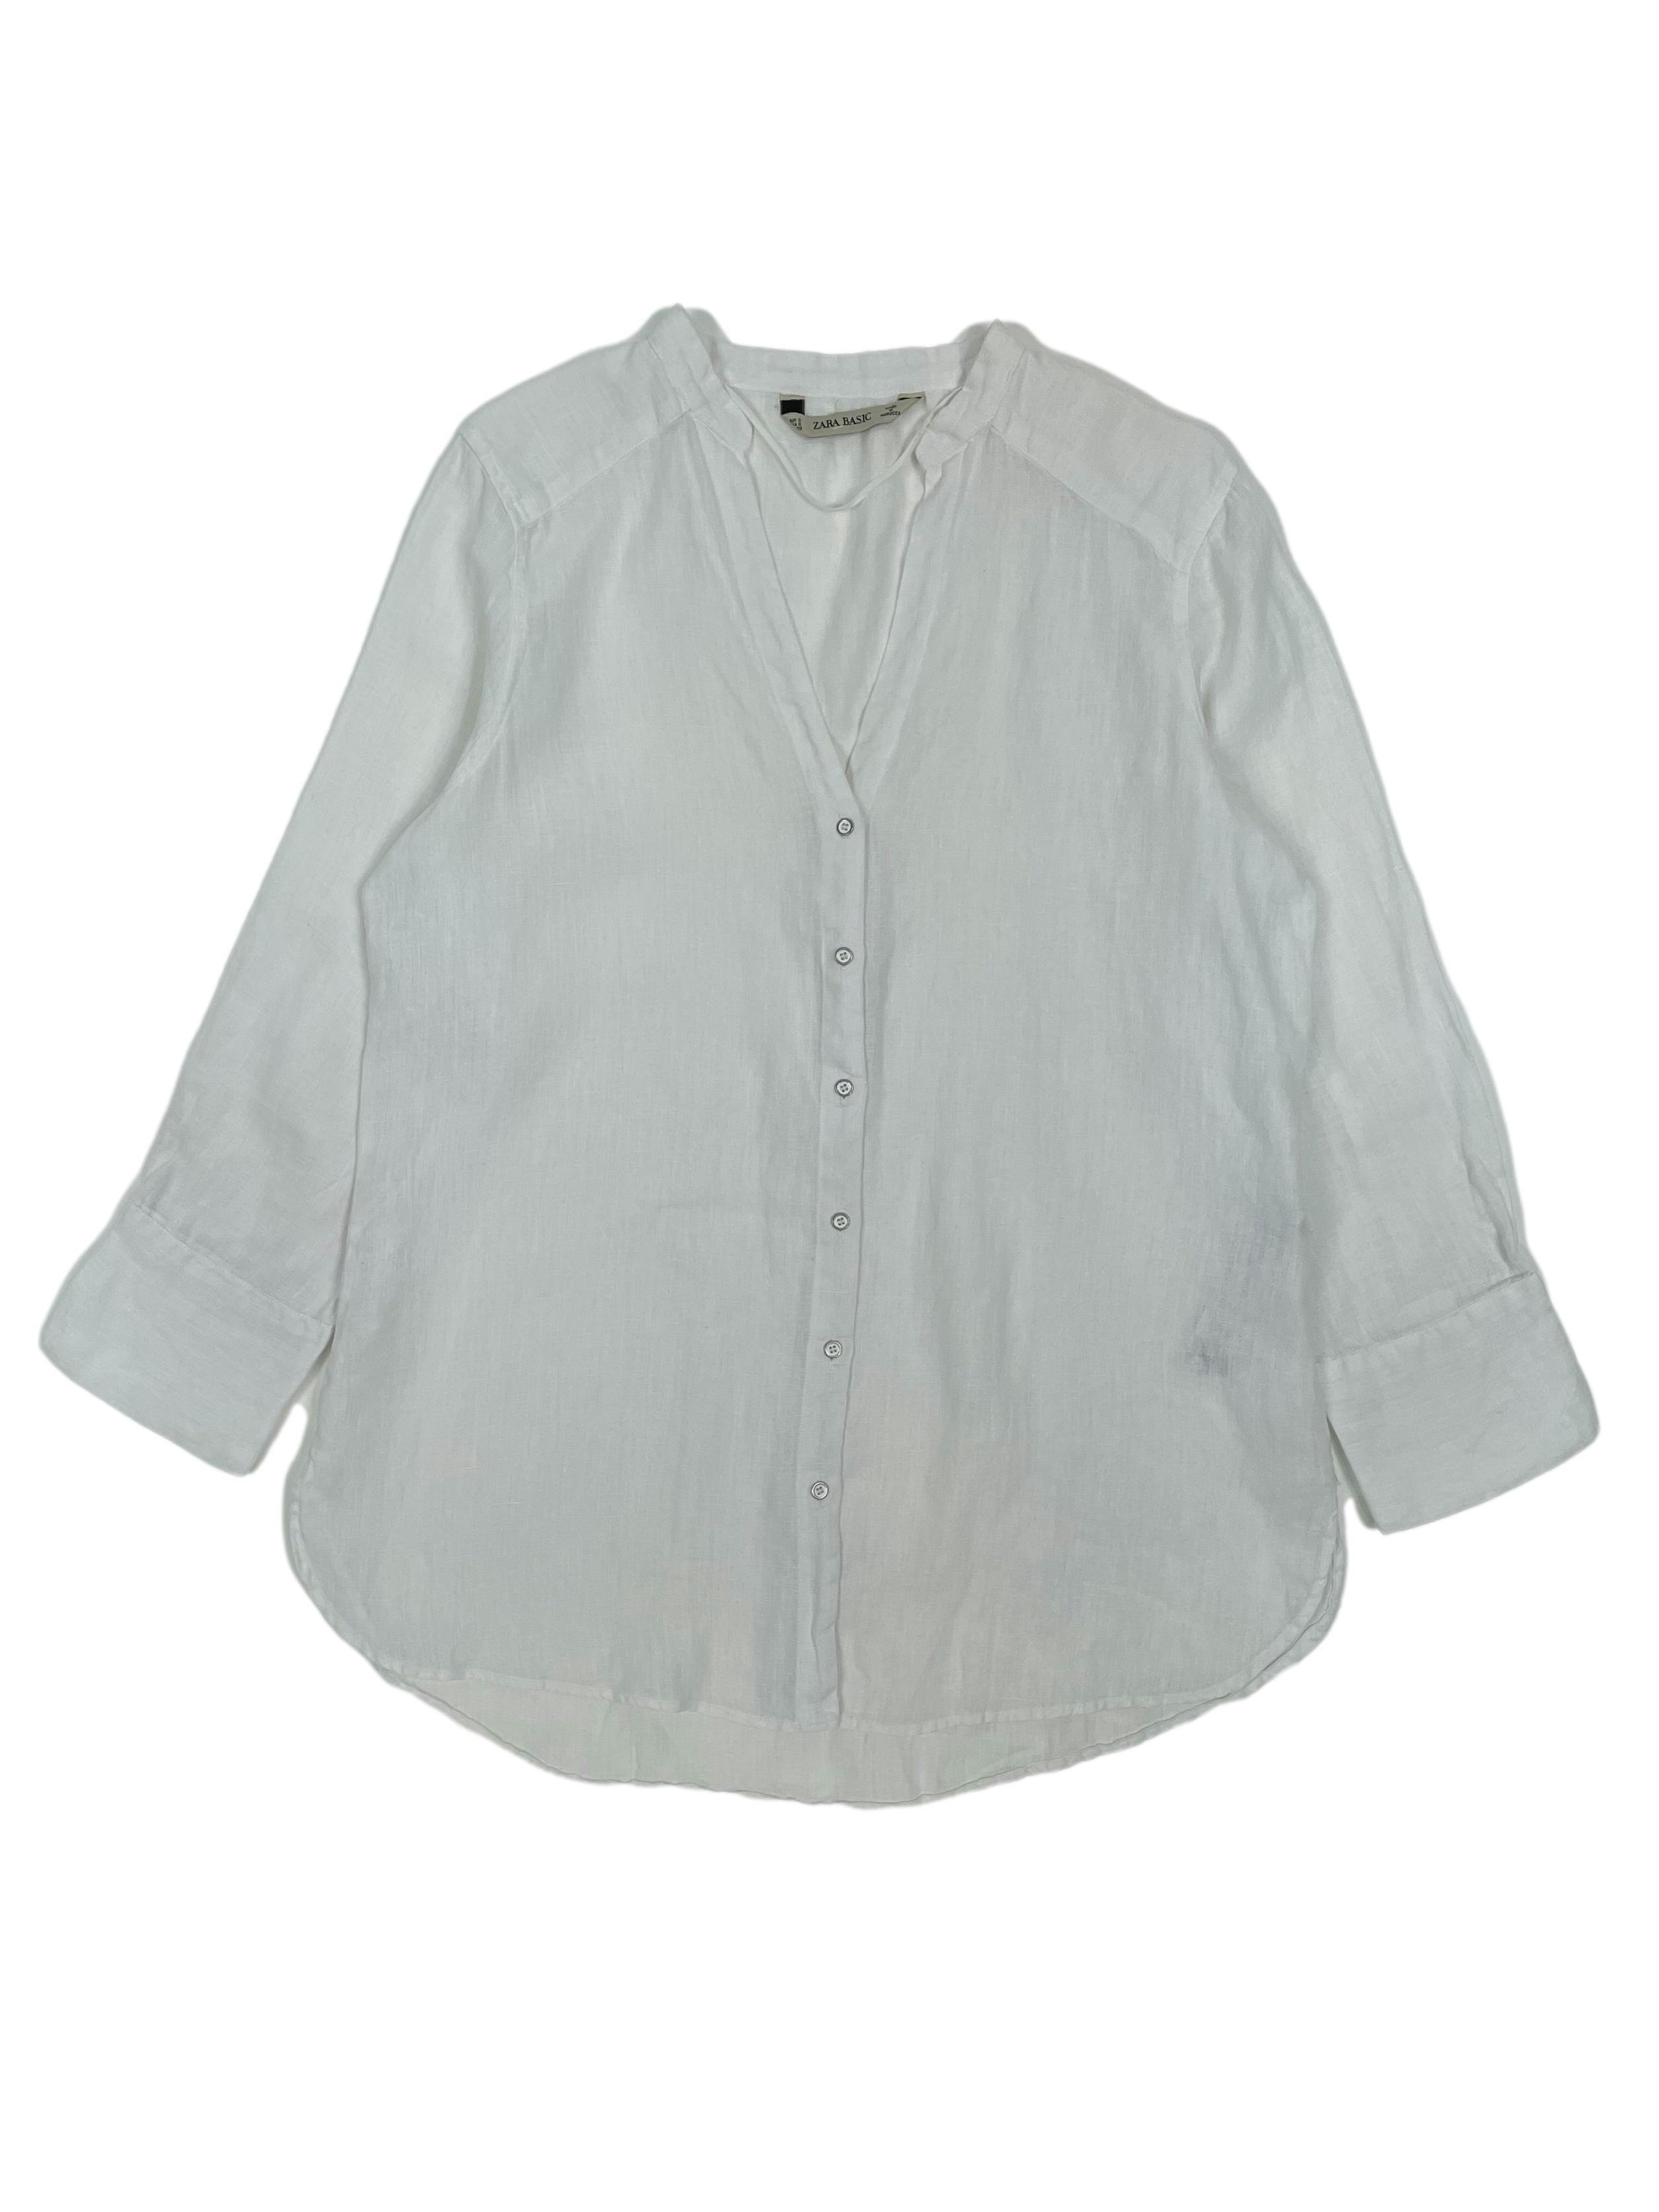 Blusa Zara blanca 100% lino, cuello nerú, escote en V, aberturas laterales y botón de repuesto. Busto 100cm, Largo 60cm.